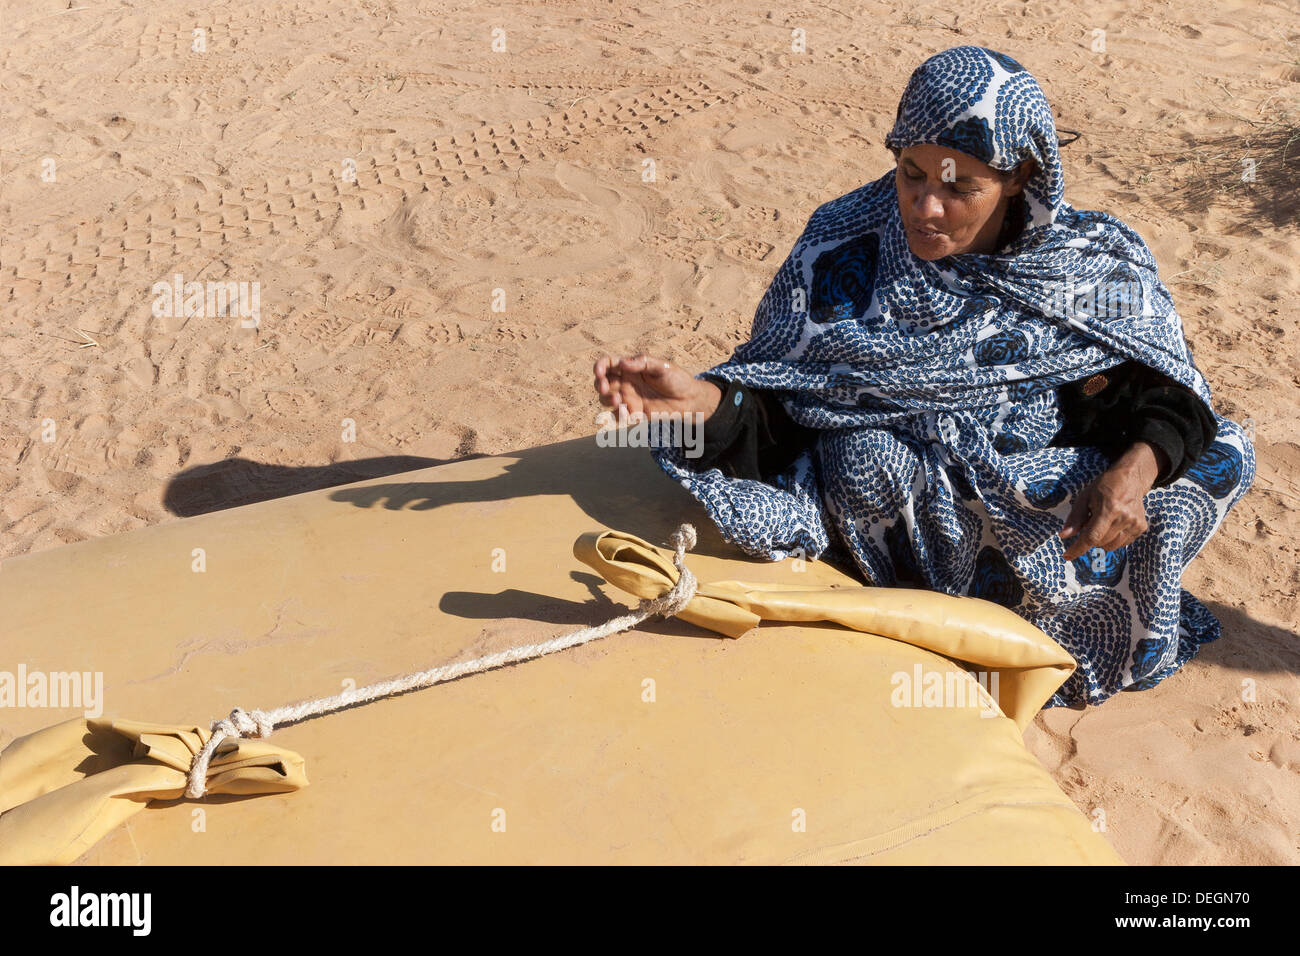 Femme de la famille nomade, portant le mulafa, robe traditionnelle mauritanienne, sur le point de prendre de l'eau dans la vessie de stockage dans la région de desert Banque D'Images